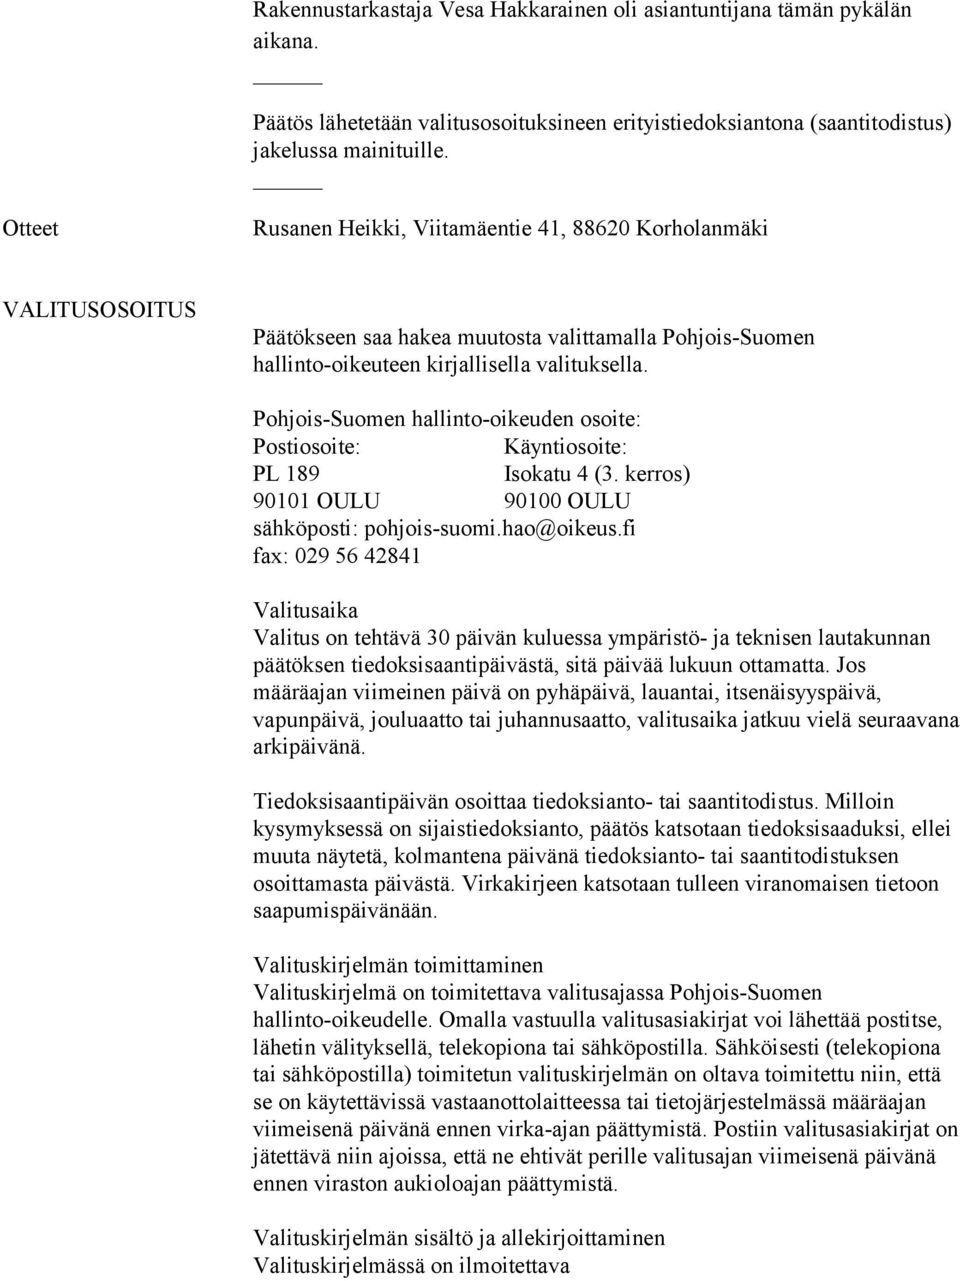 Pohjois-Suomen hallinto-oikeuden osoite: Postiosoite: Käyntiosoite: PL 189 Isokatu 4 (3. kerros) 90101 OULU 90100 OULU sähköposti: pohjois-suomi.hao@oikeus.